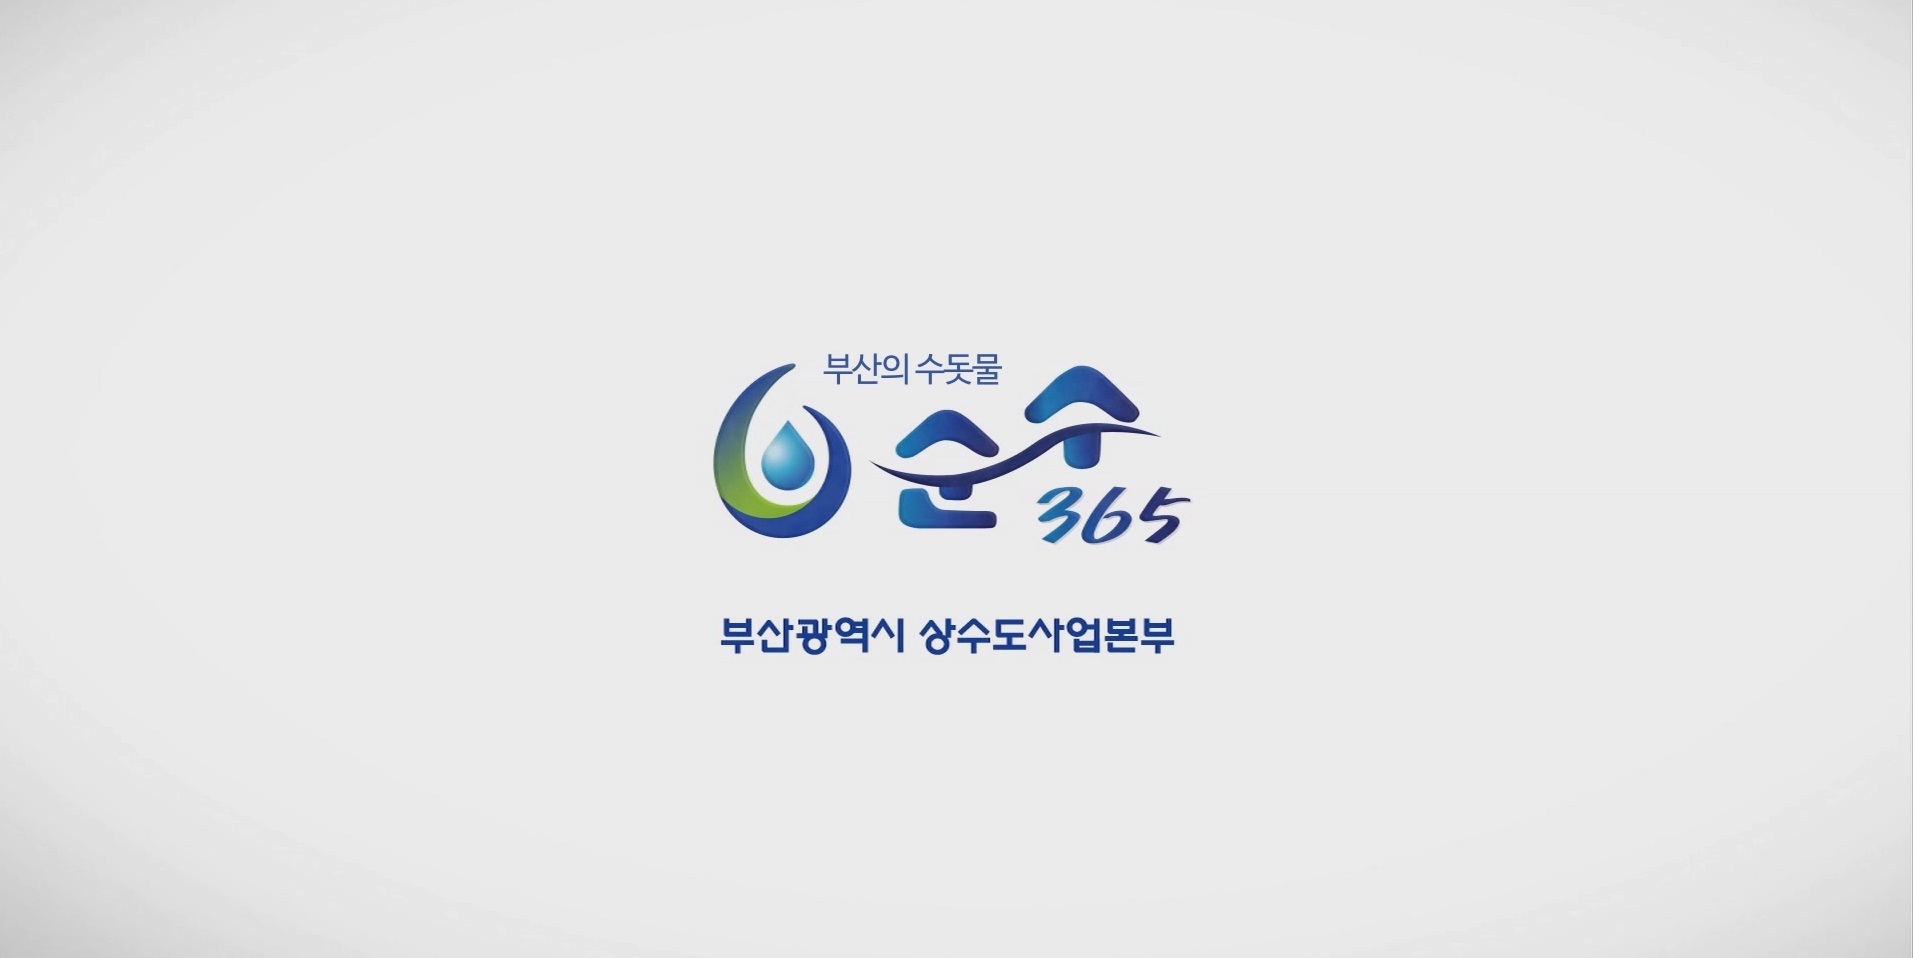 부산의 수돗물 순수365 부산광역시 상수도사업본부